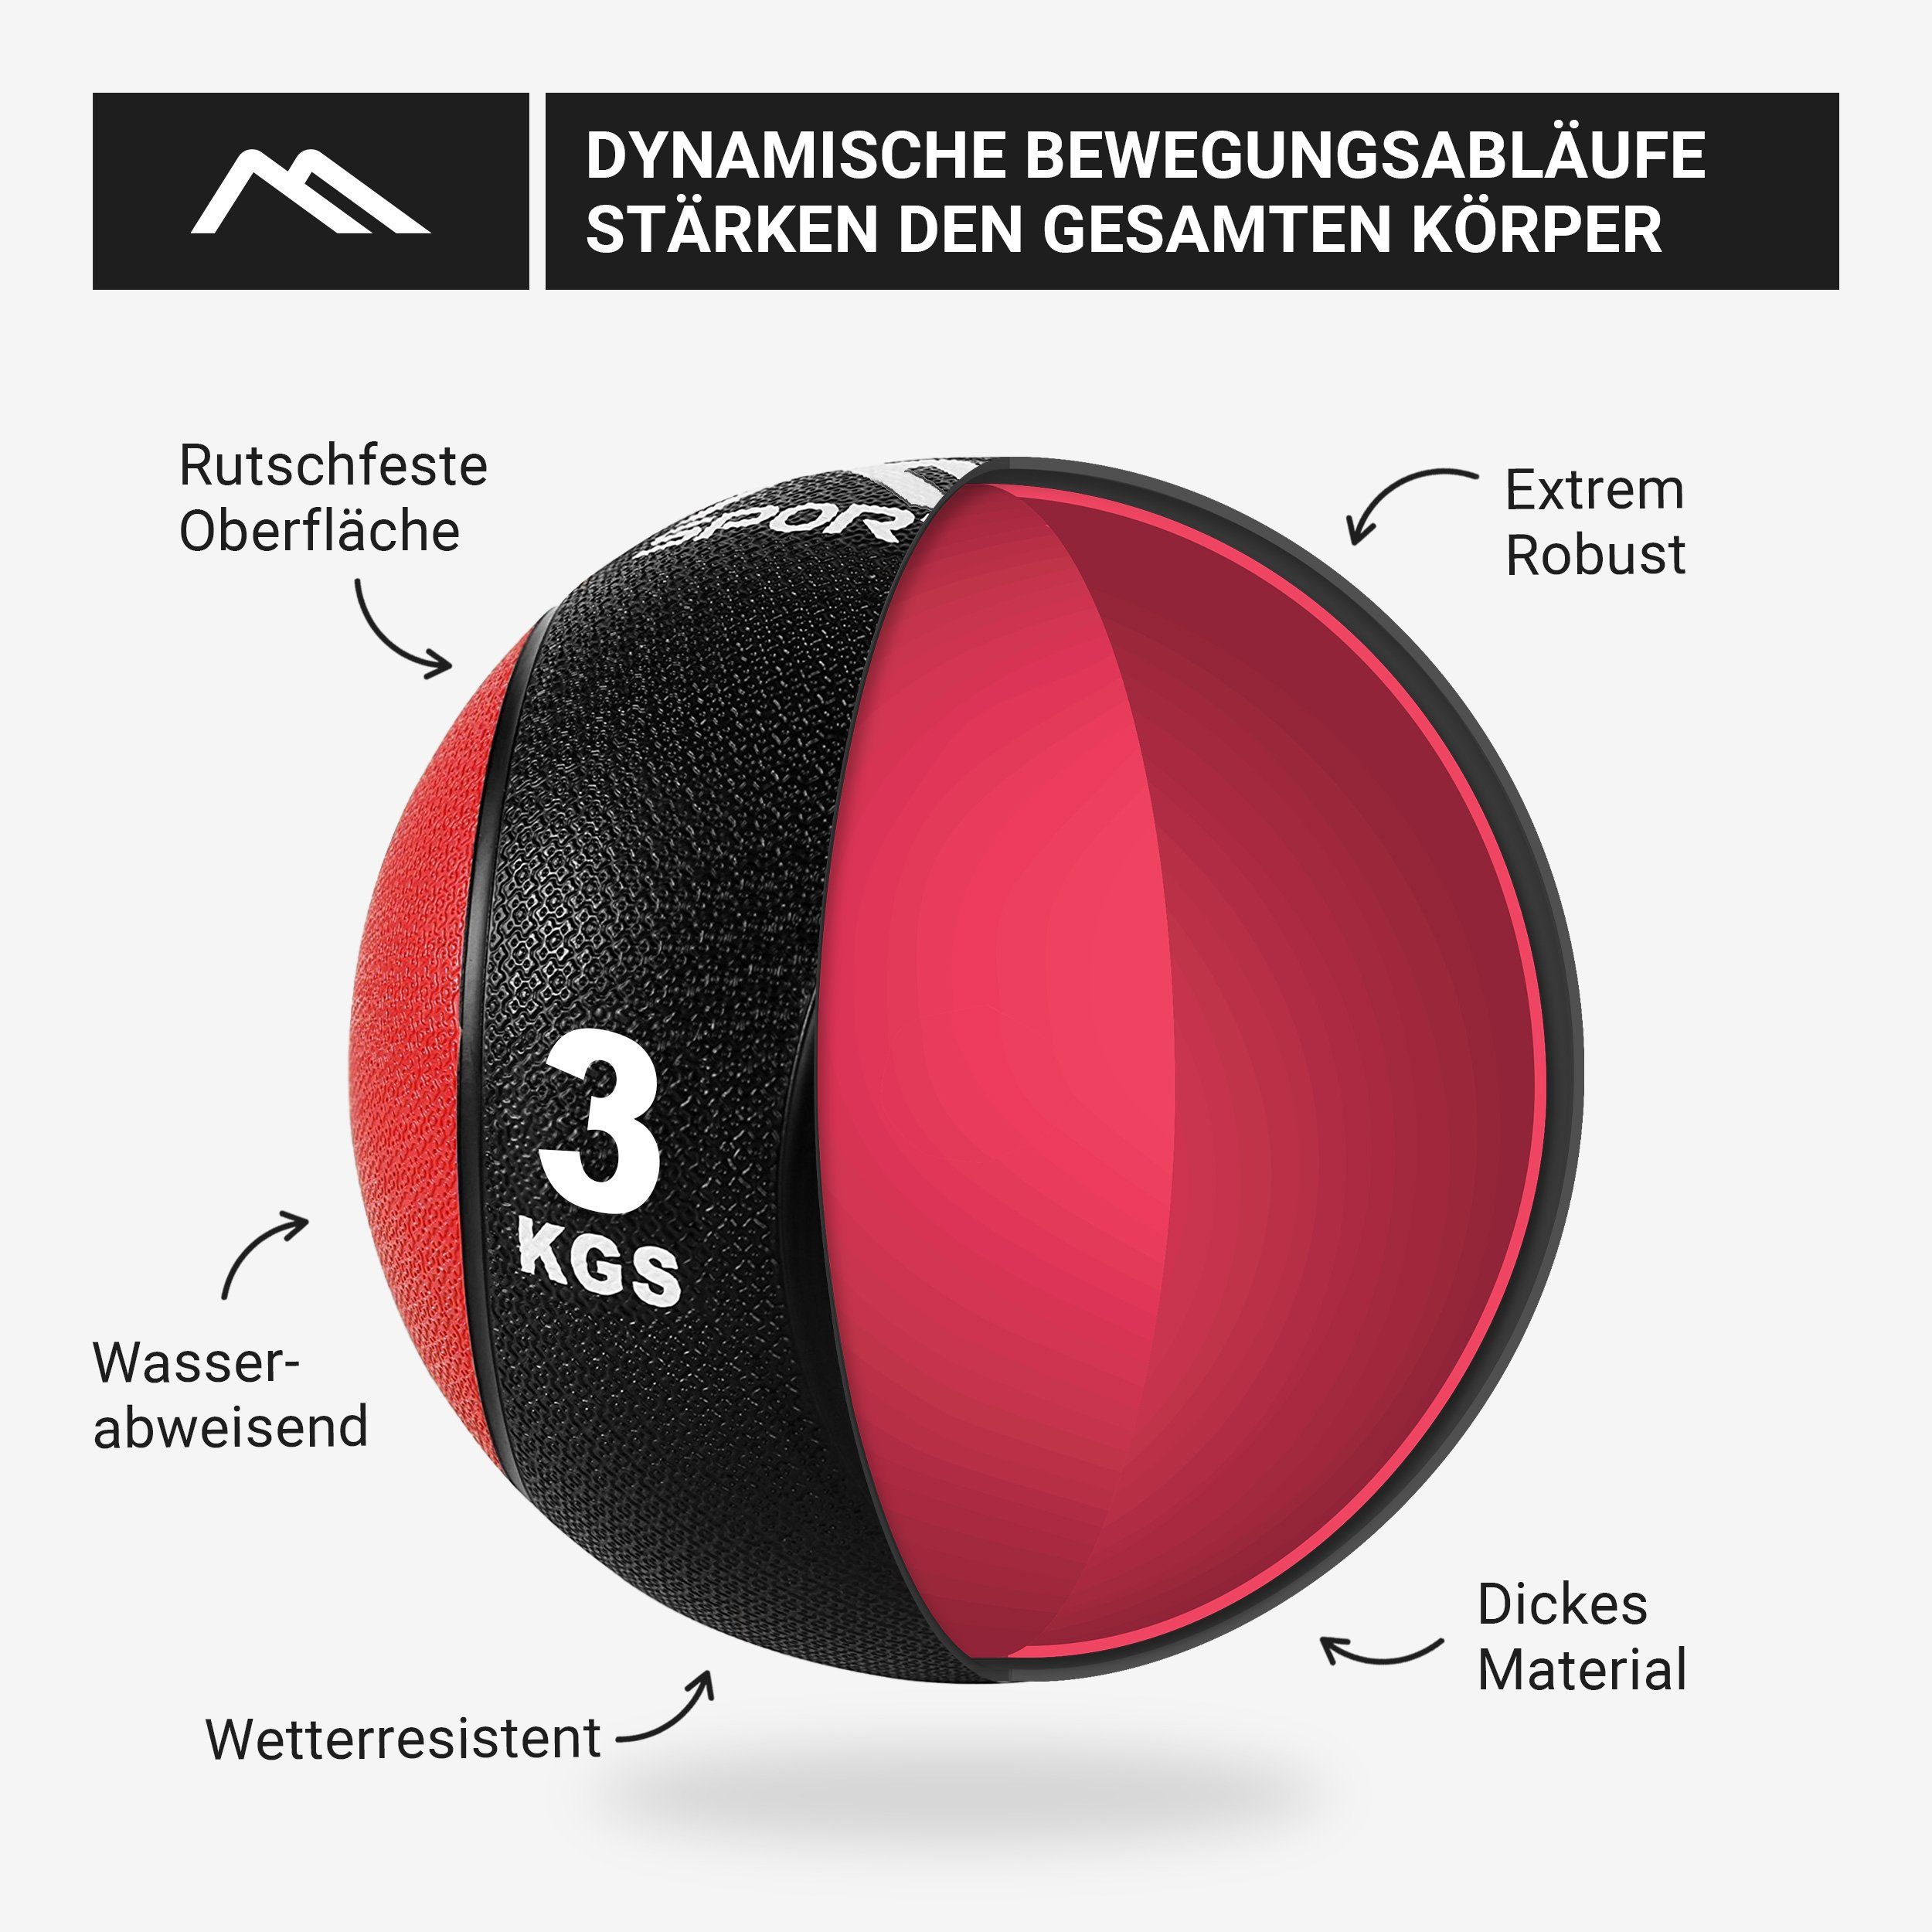 MSports® Medizinball Medizinball 10 Übungsposter Rot – inkl. - kg 1 3 kg –